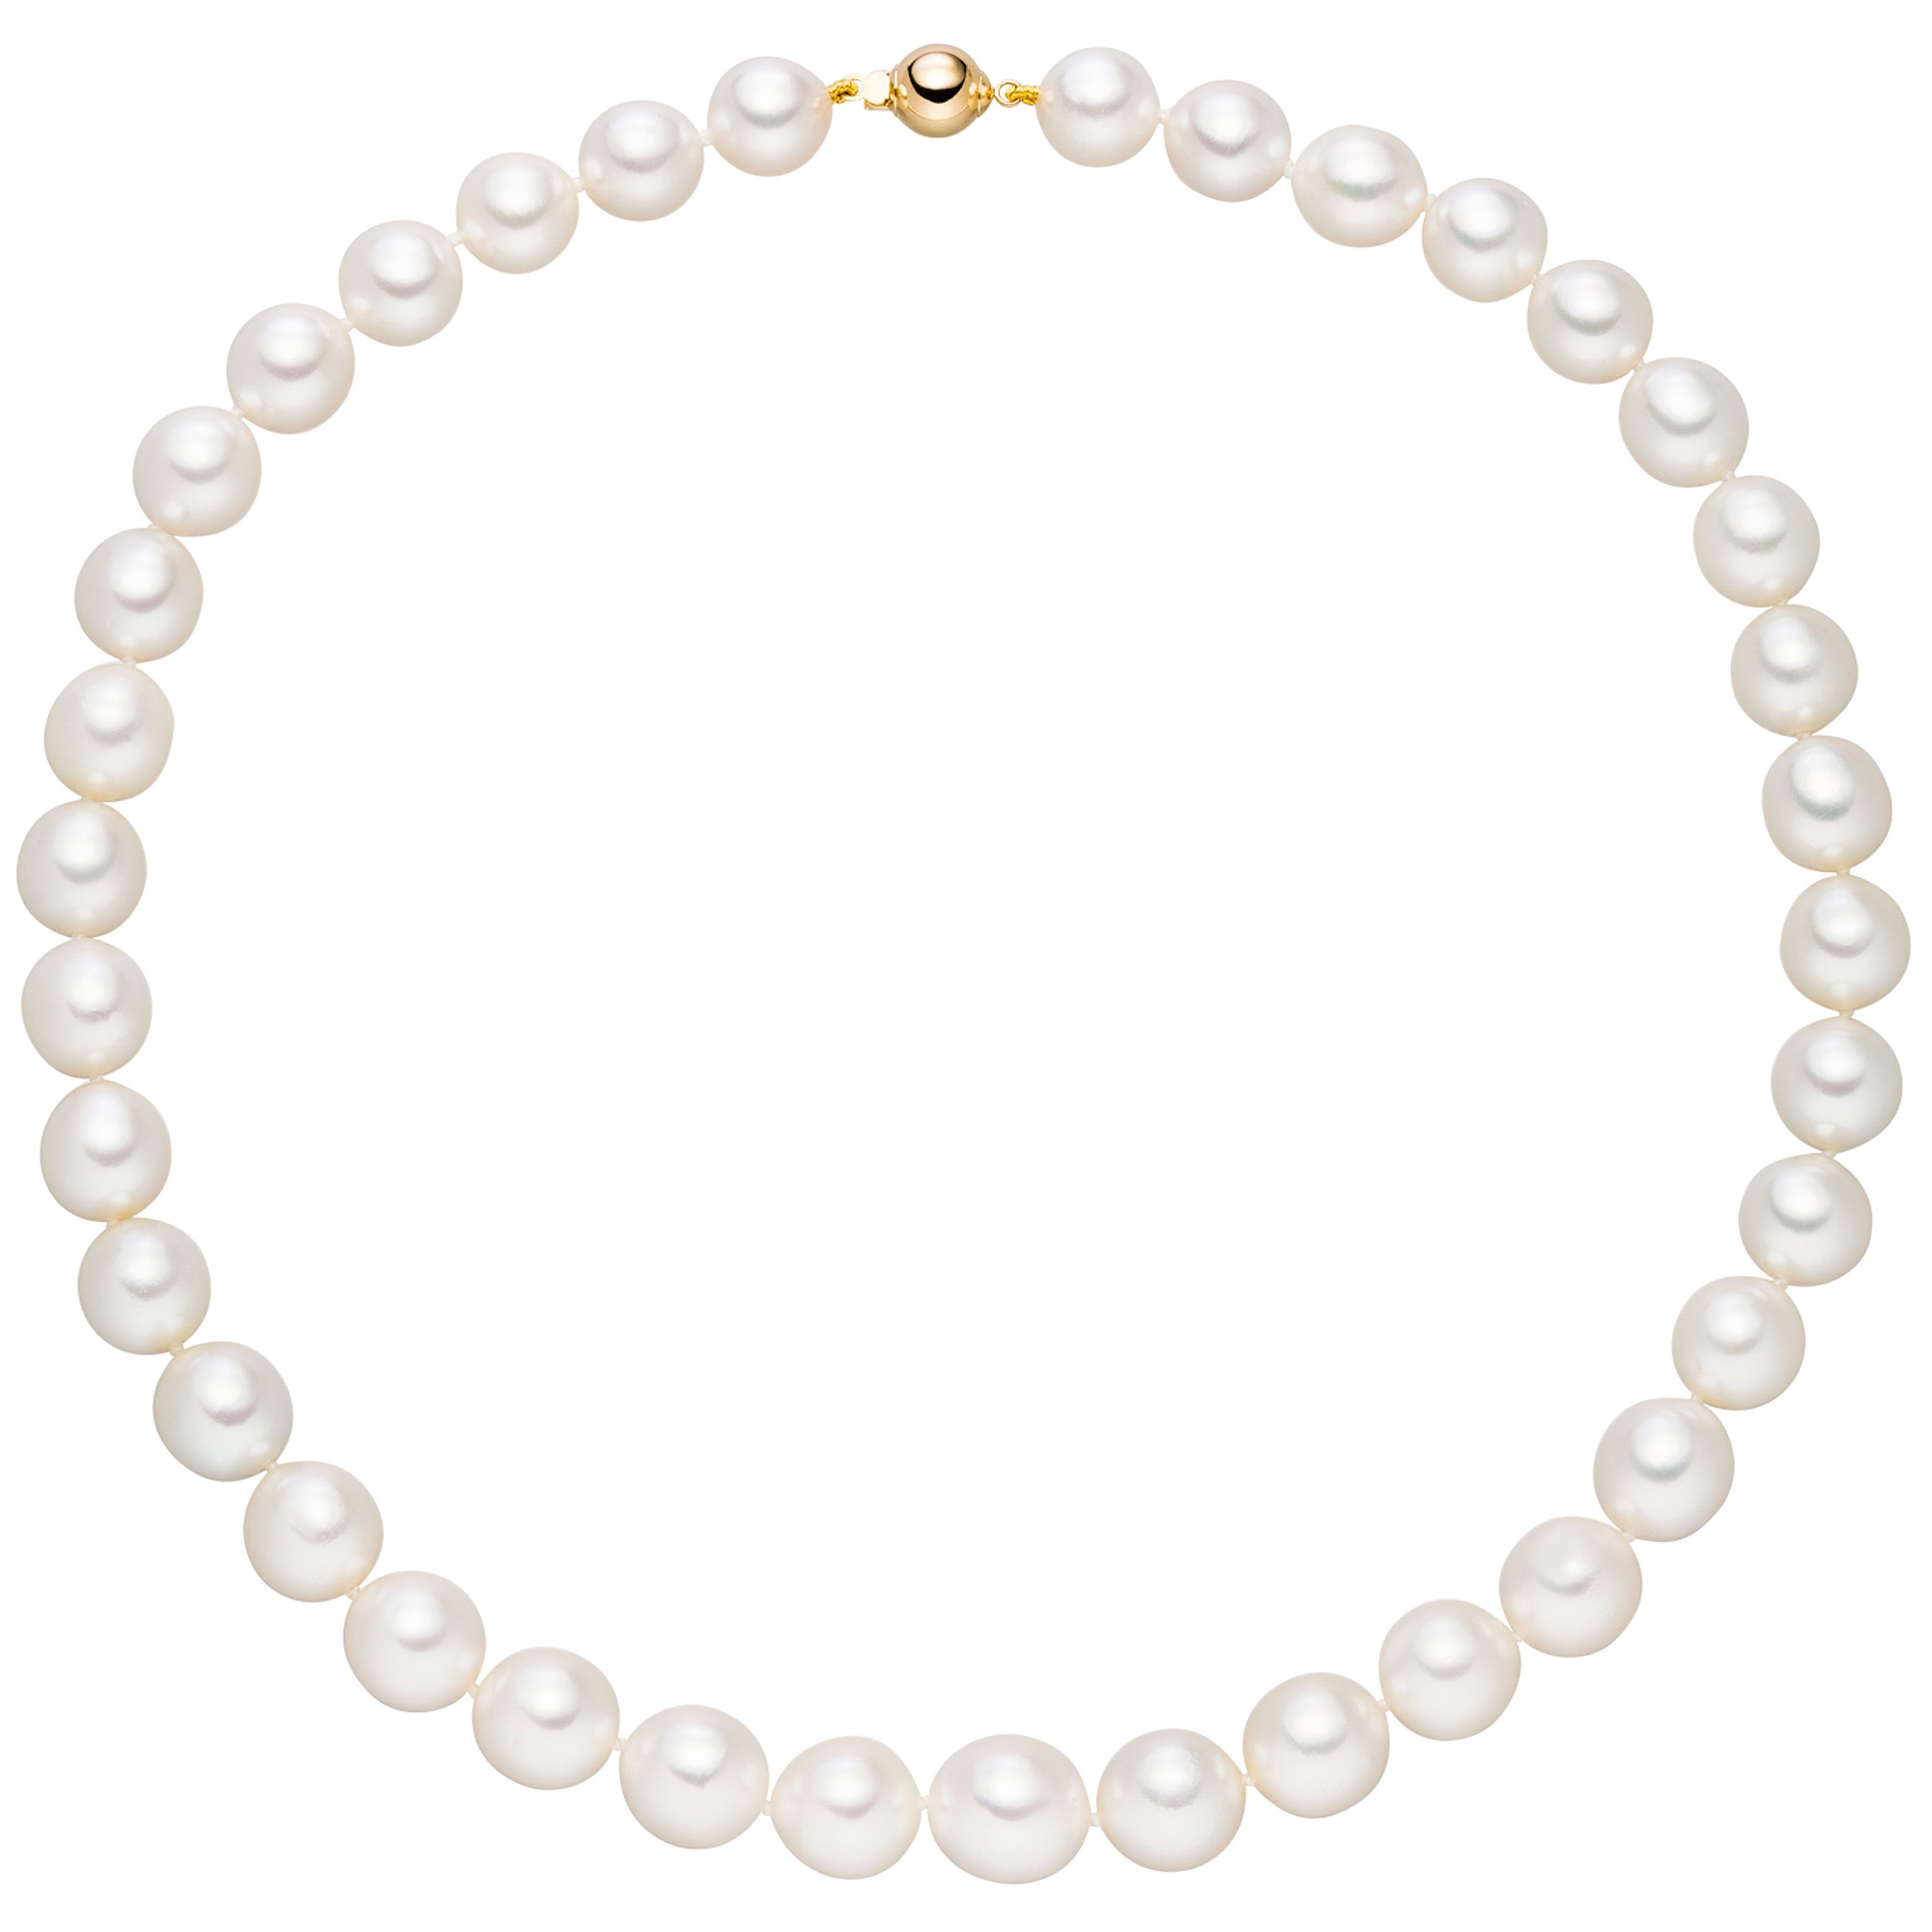 Traumringe24 - Gold Perlenkette 585 Perlen cm Verschluss Südsee Kette Halskette Collier 45